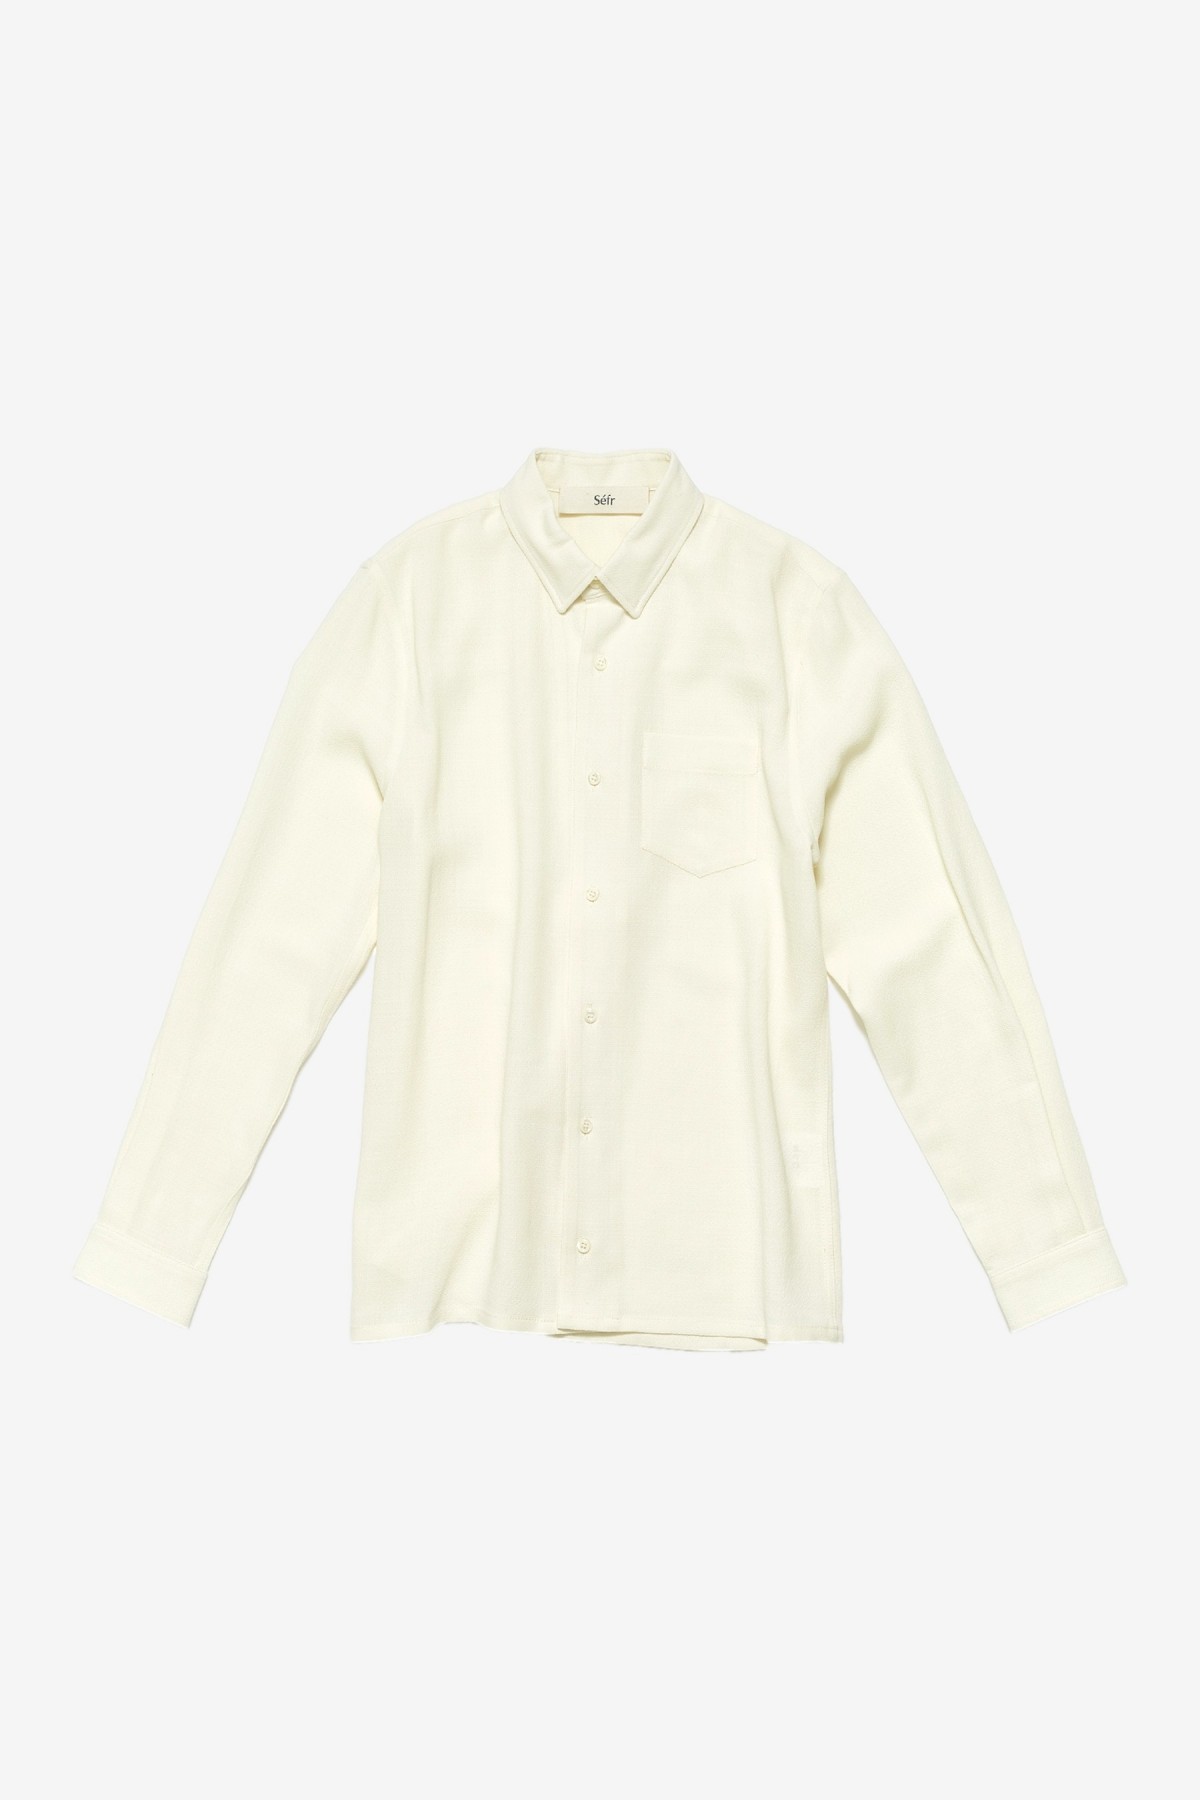 Séfr Hampus Shirt  in Off White